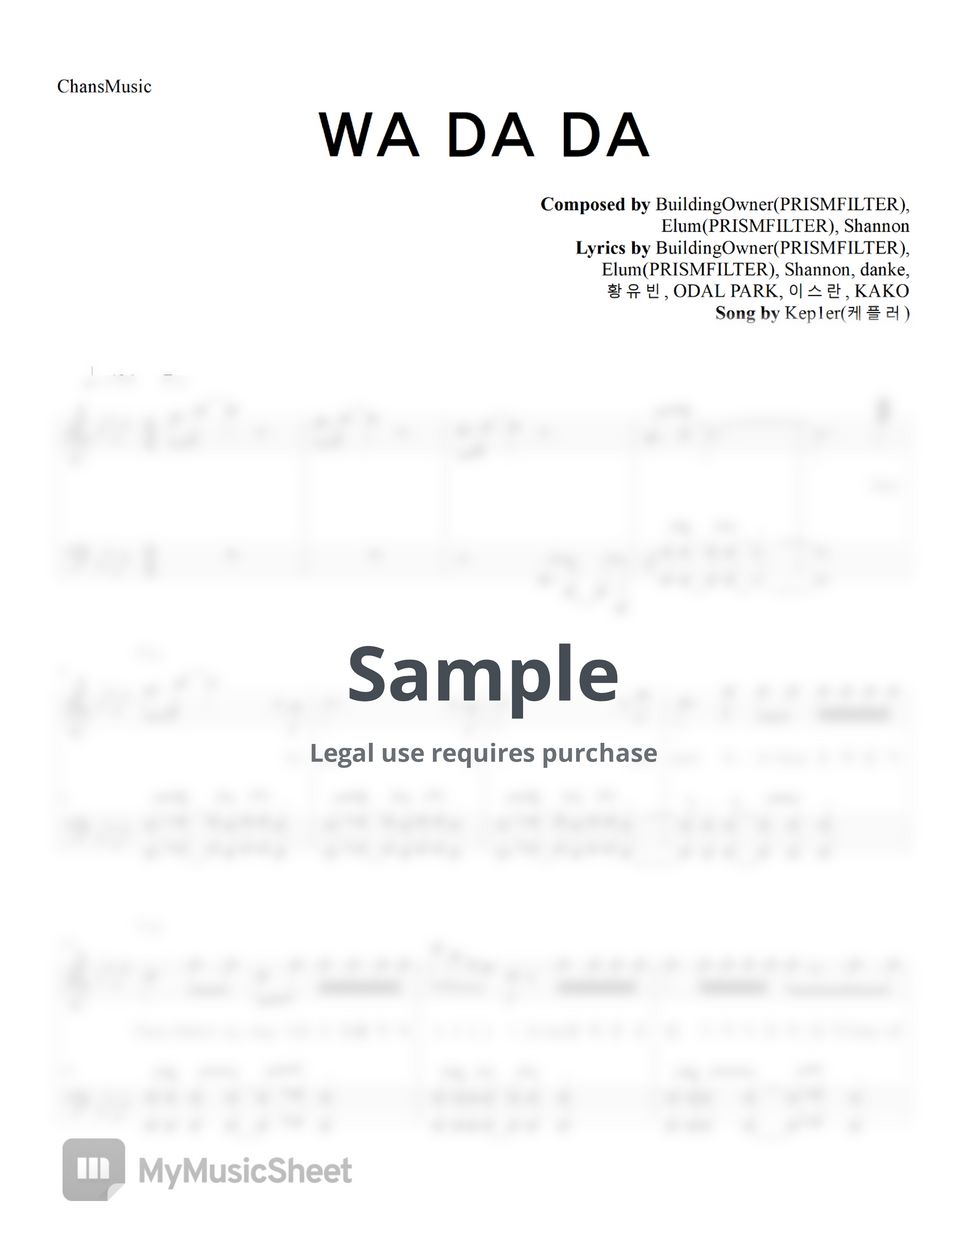 Kep1er - WA DA DA (코드, 가사 포함) by ChansMusic